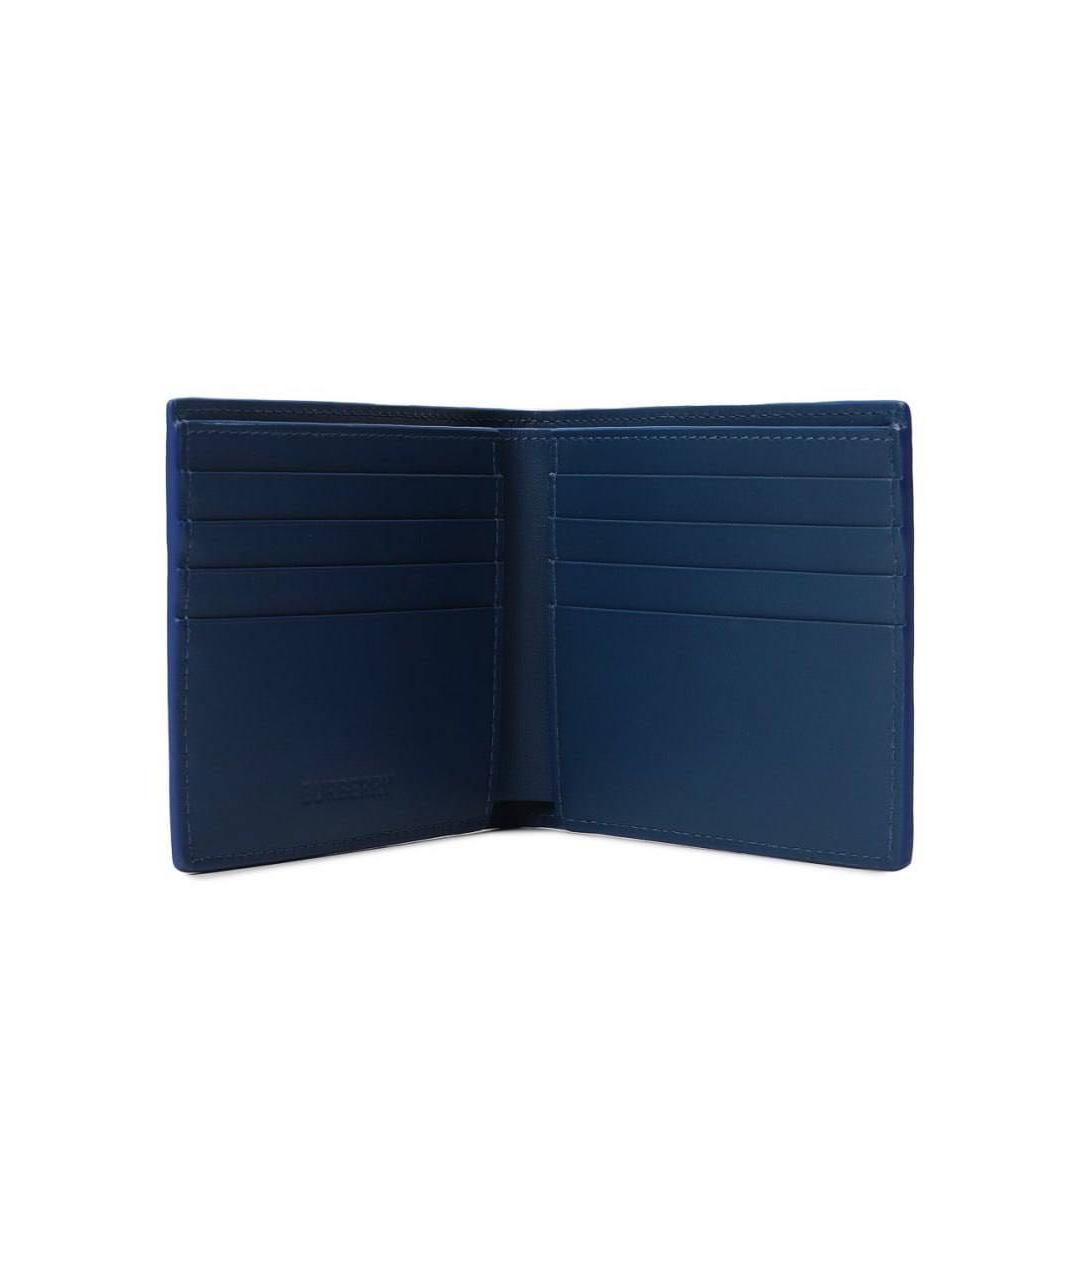 BURBERRY Темно-синий кожаный кошелек, фото 3